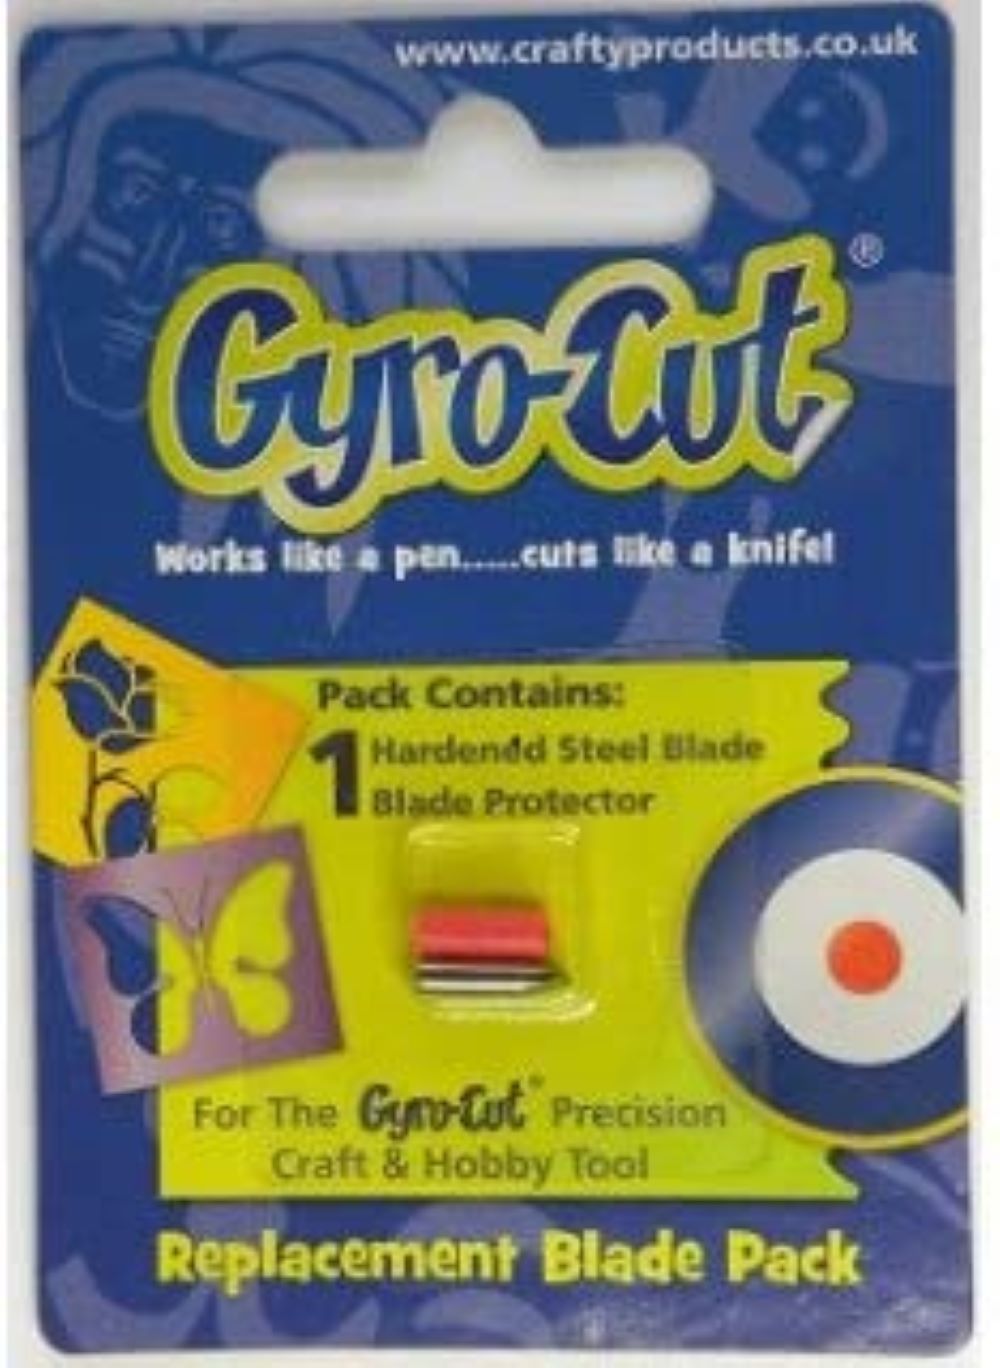 Genuine Gyrocut Pro 🙌 #gyrocut #gyrocutpro #leather #cardcutting #han